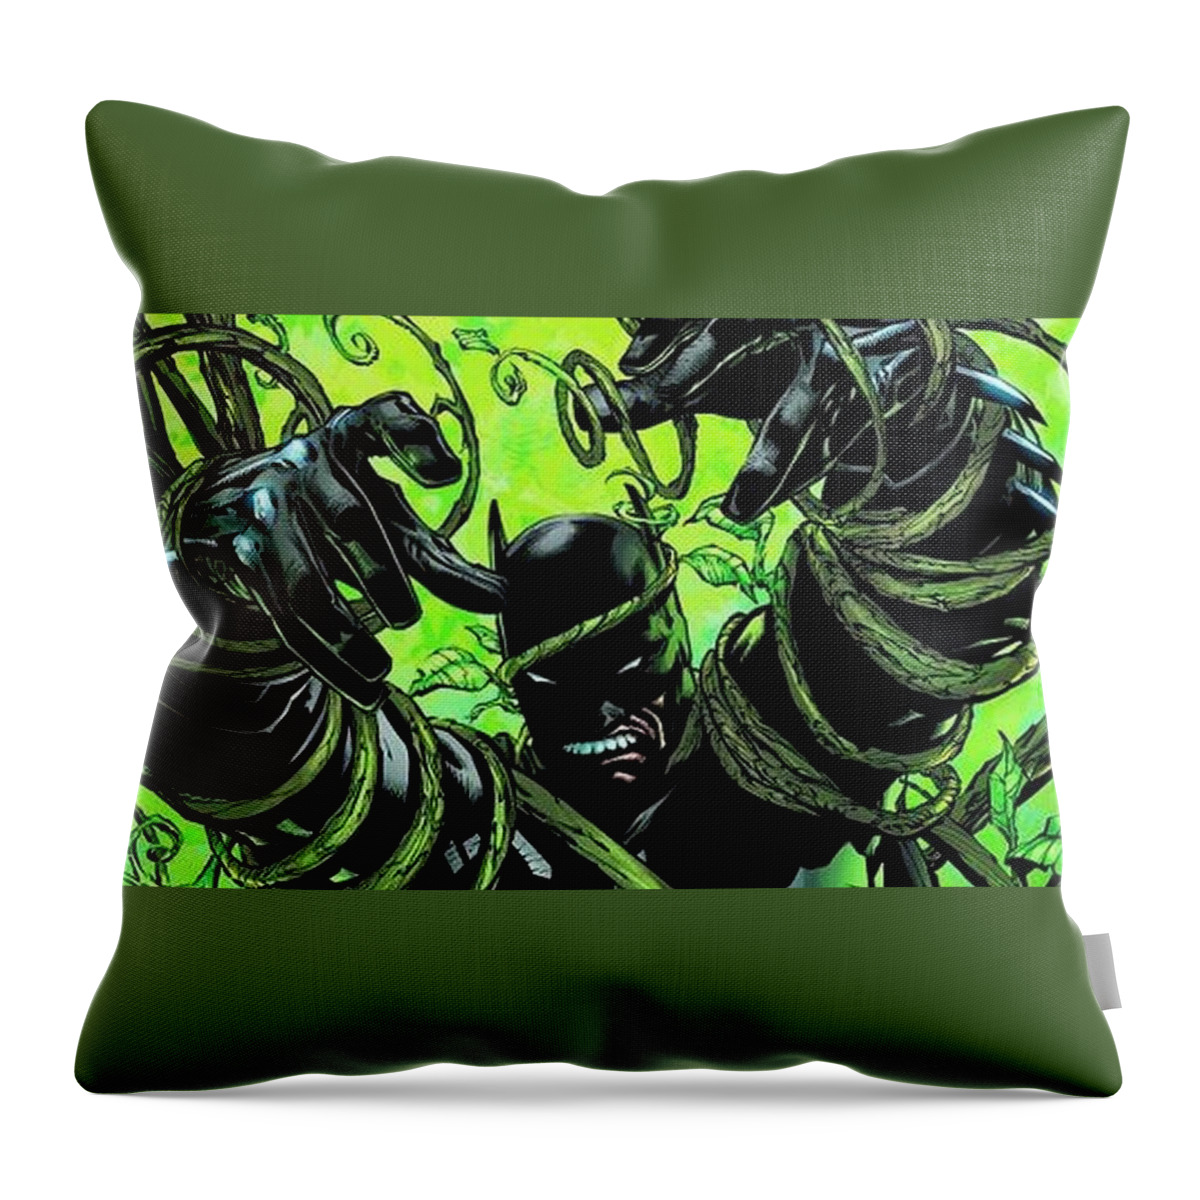 Batman Throw Pillow featuring the digital art Batman #41 by Super Lovely